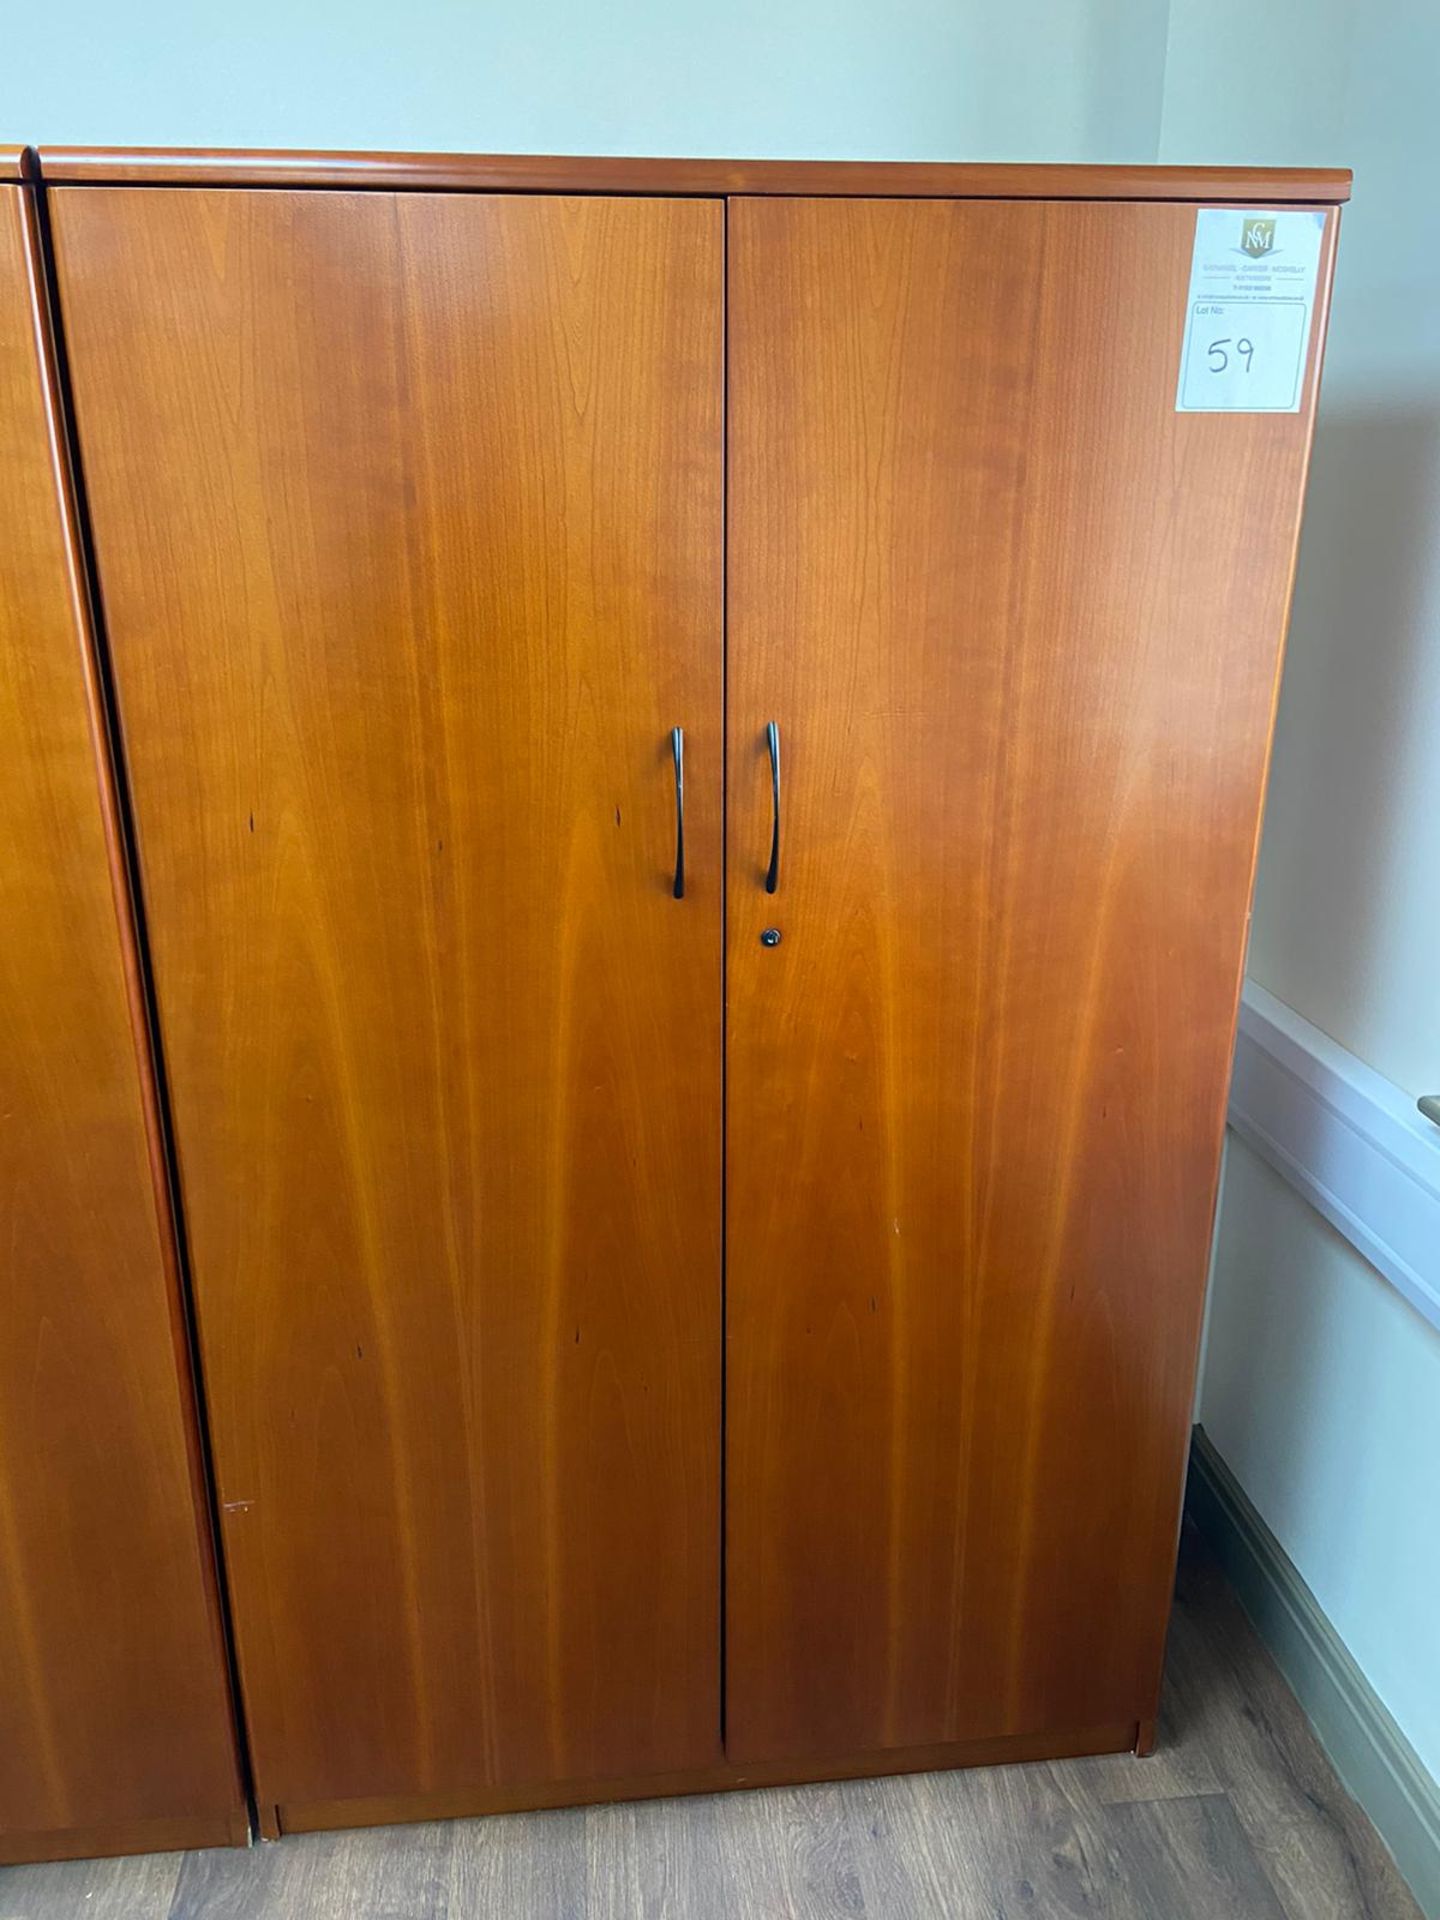 Wooden 2 Door Cabinet